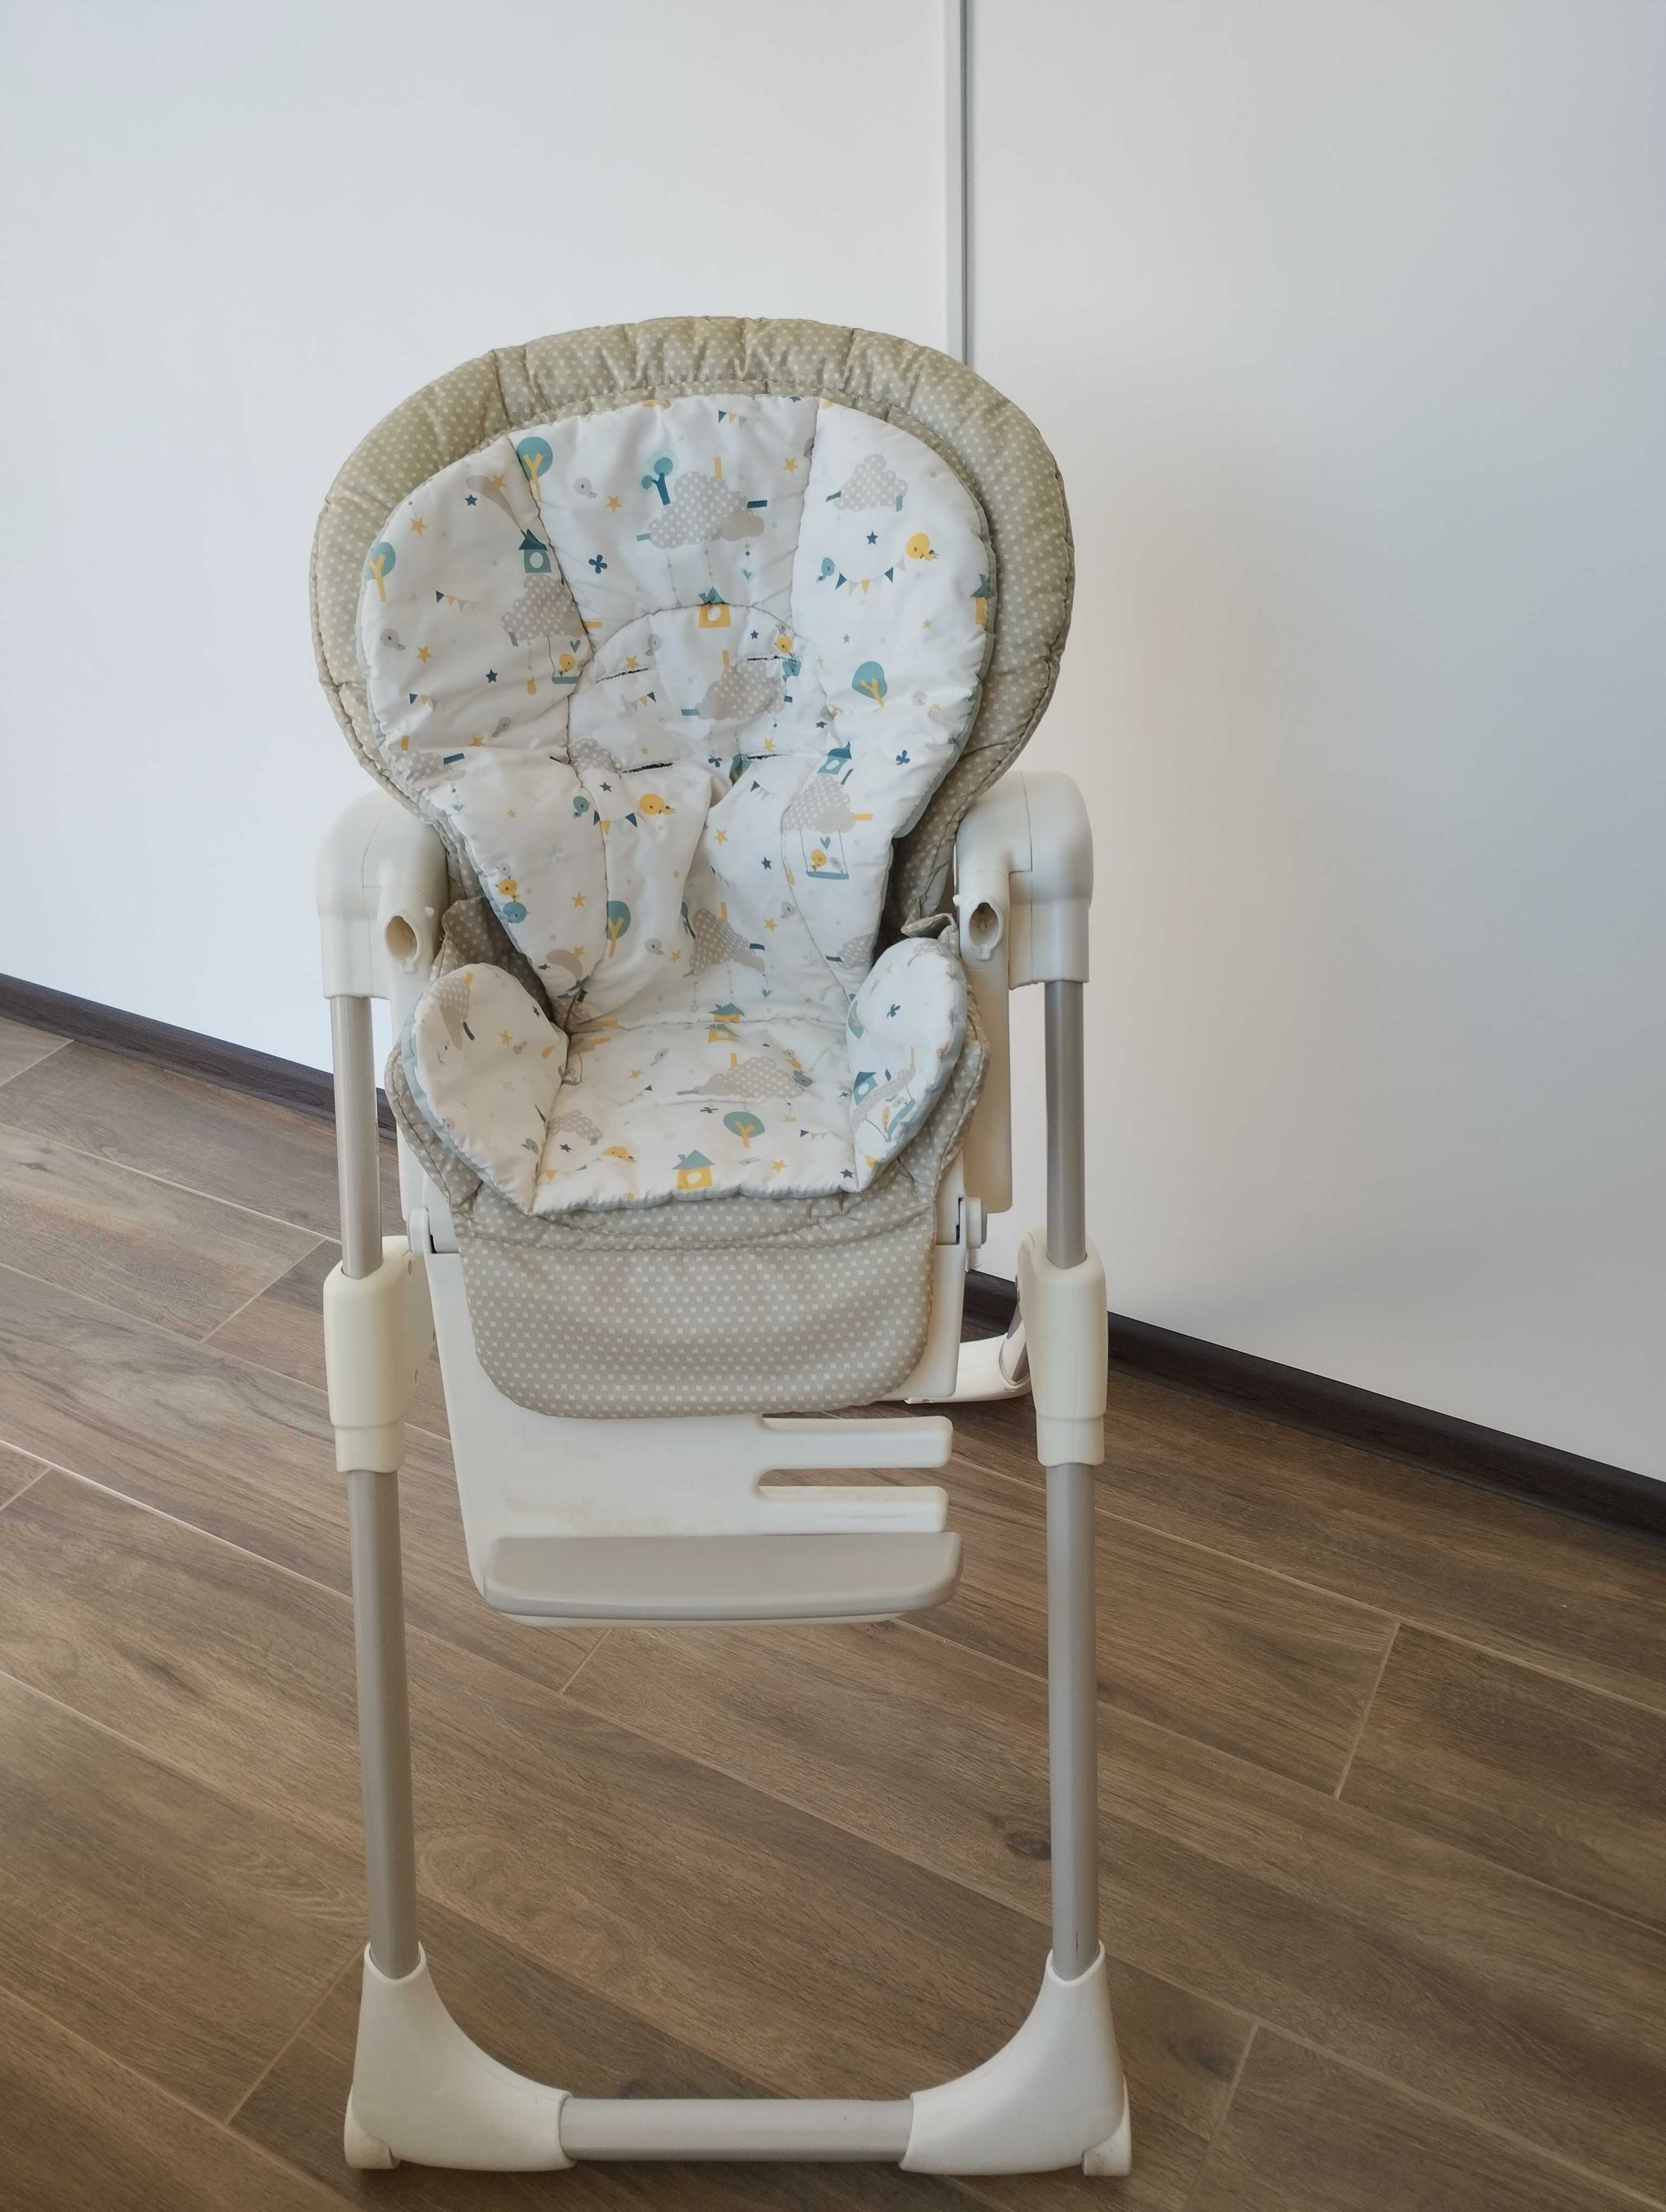 Дитячий стілець для годування ( детский стульчик) Joie Carello